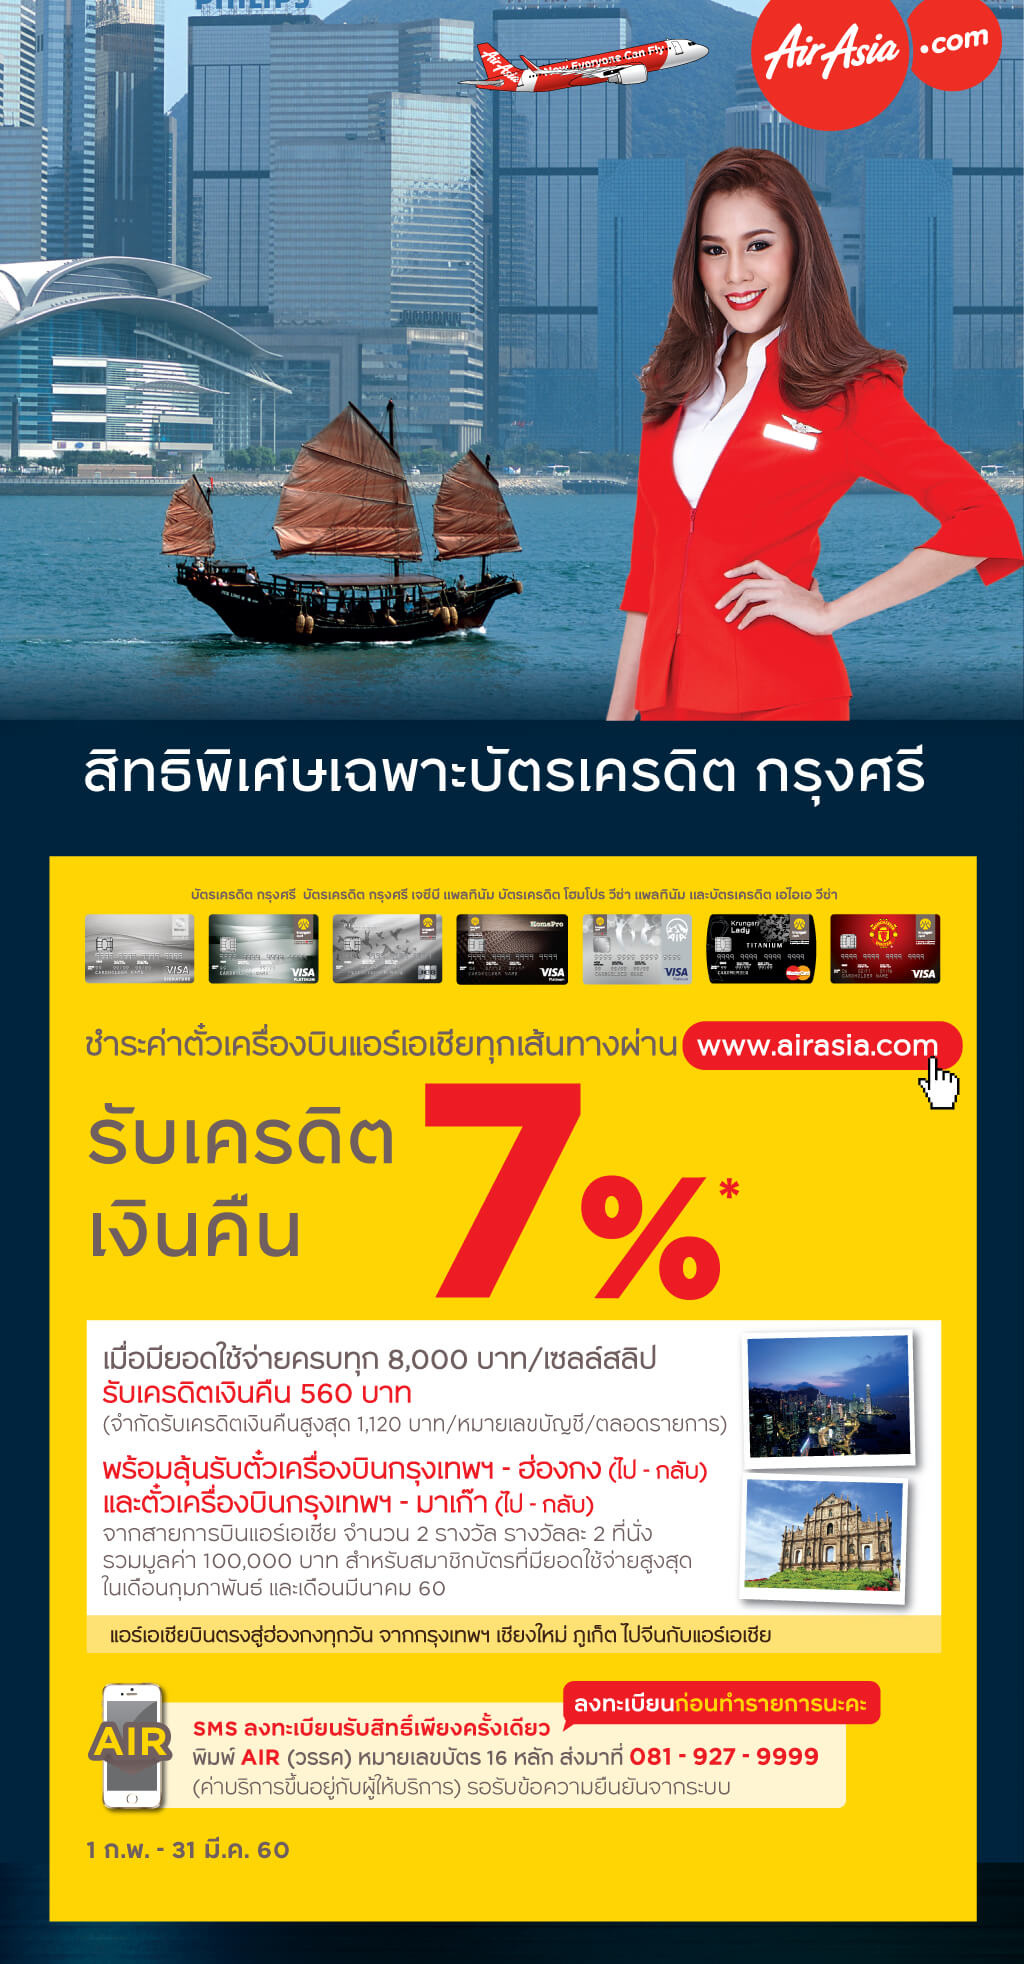 ชำระค่าตั๋วเครื่องบินแอร์เอเชียทุกเส้นทางผ่าน www.airasia.com รับเครดิตเงินคืน 7% สำหรับผู้ถือบัตรเครดิต Krungsri